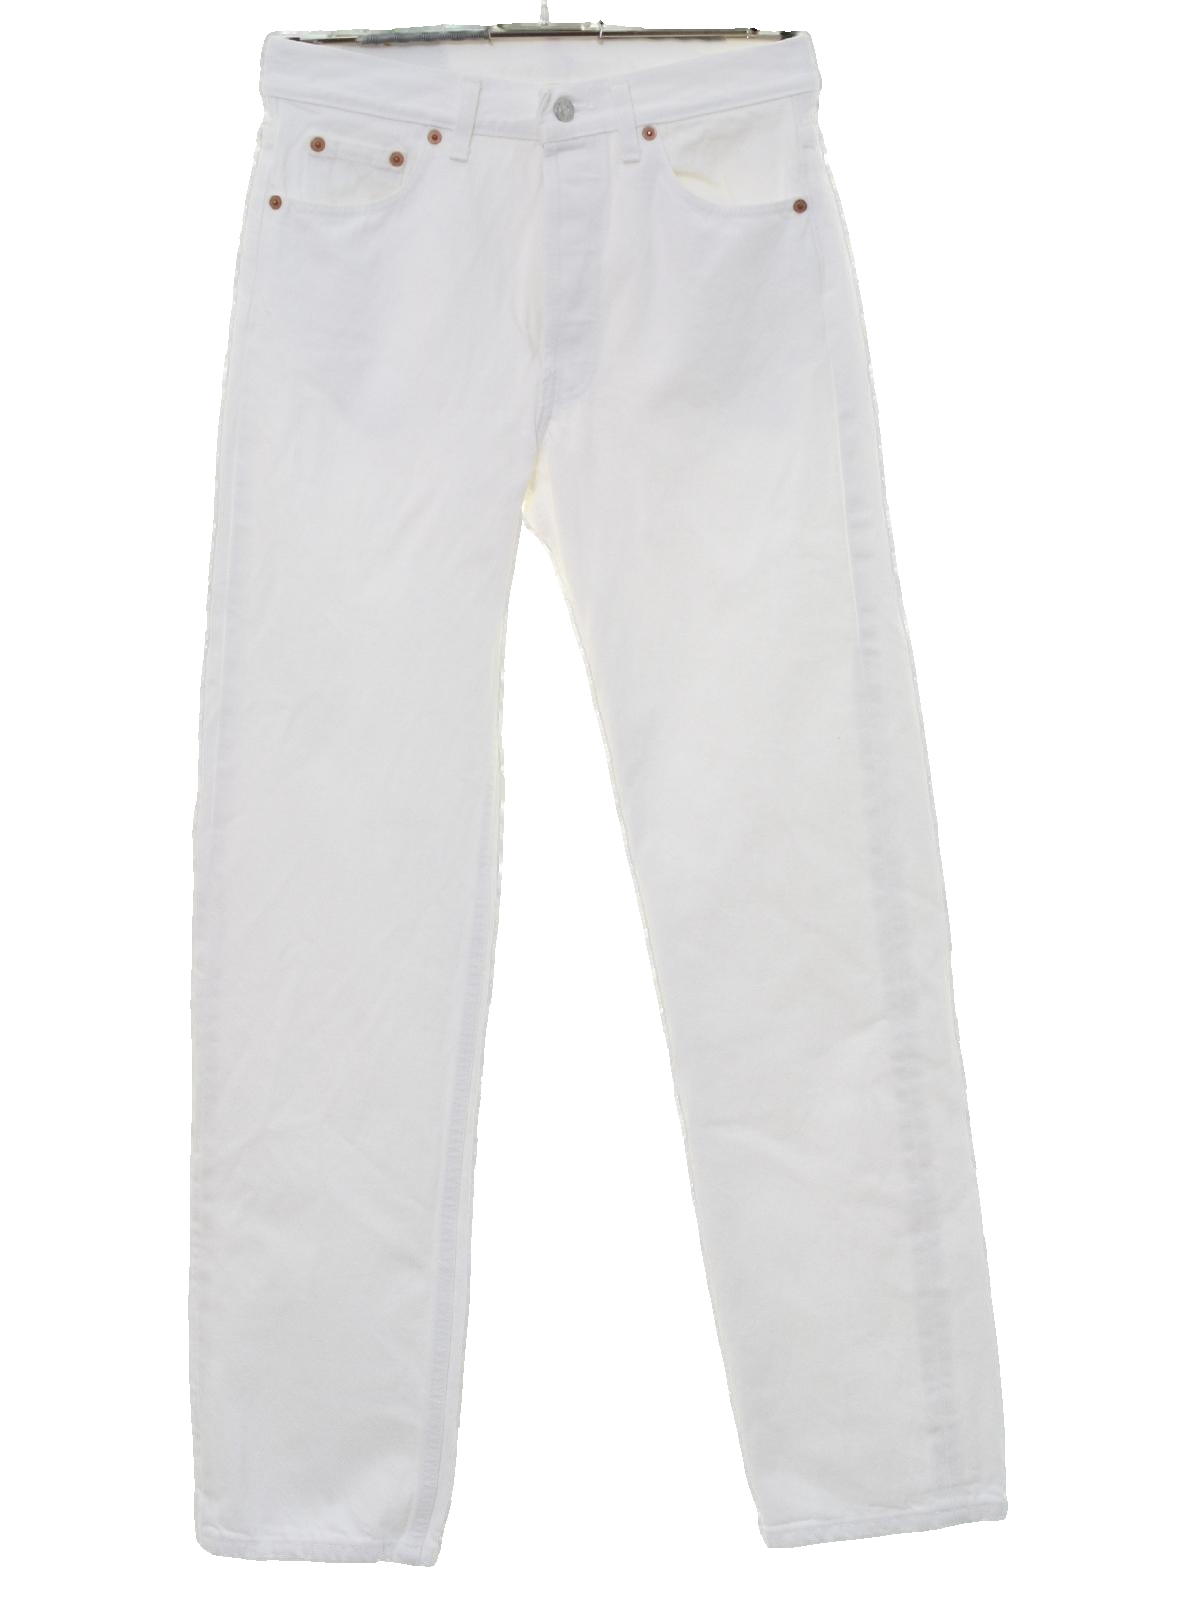 80's Levis 501s Pants: 80s -Levis 501s- Mens white cotton denim ...